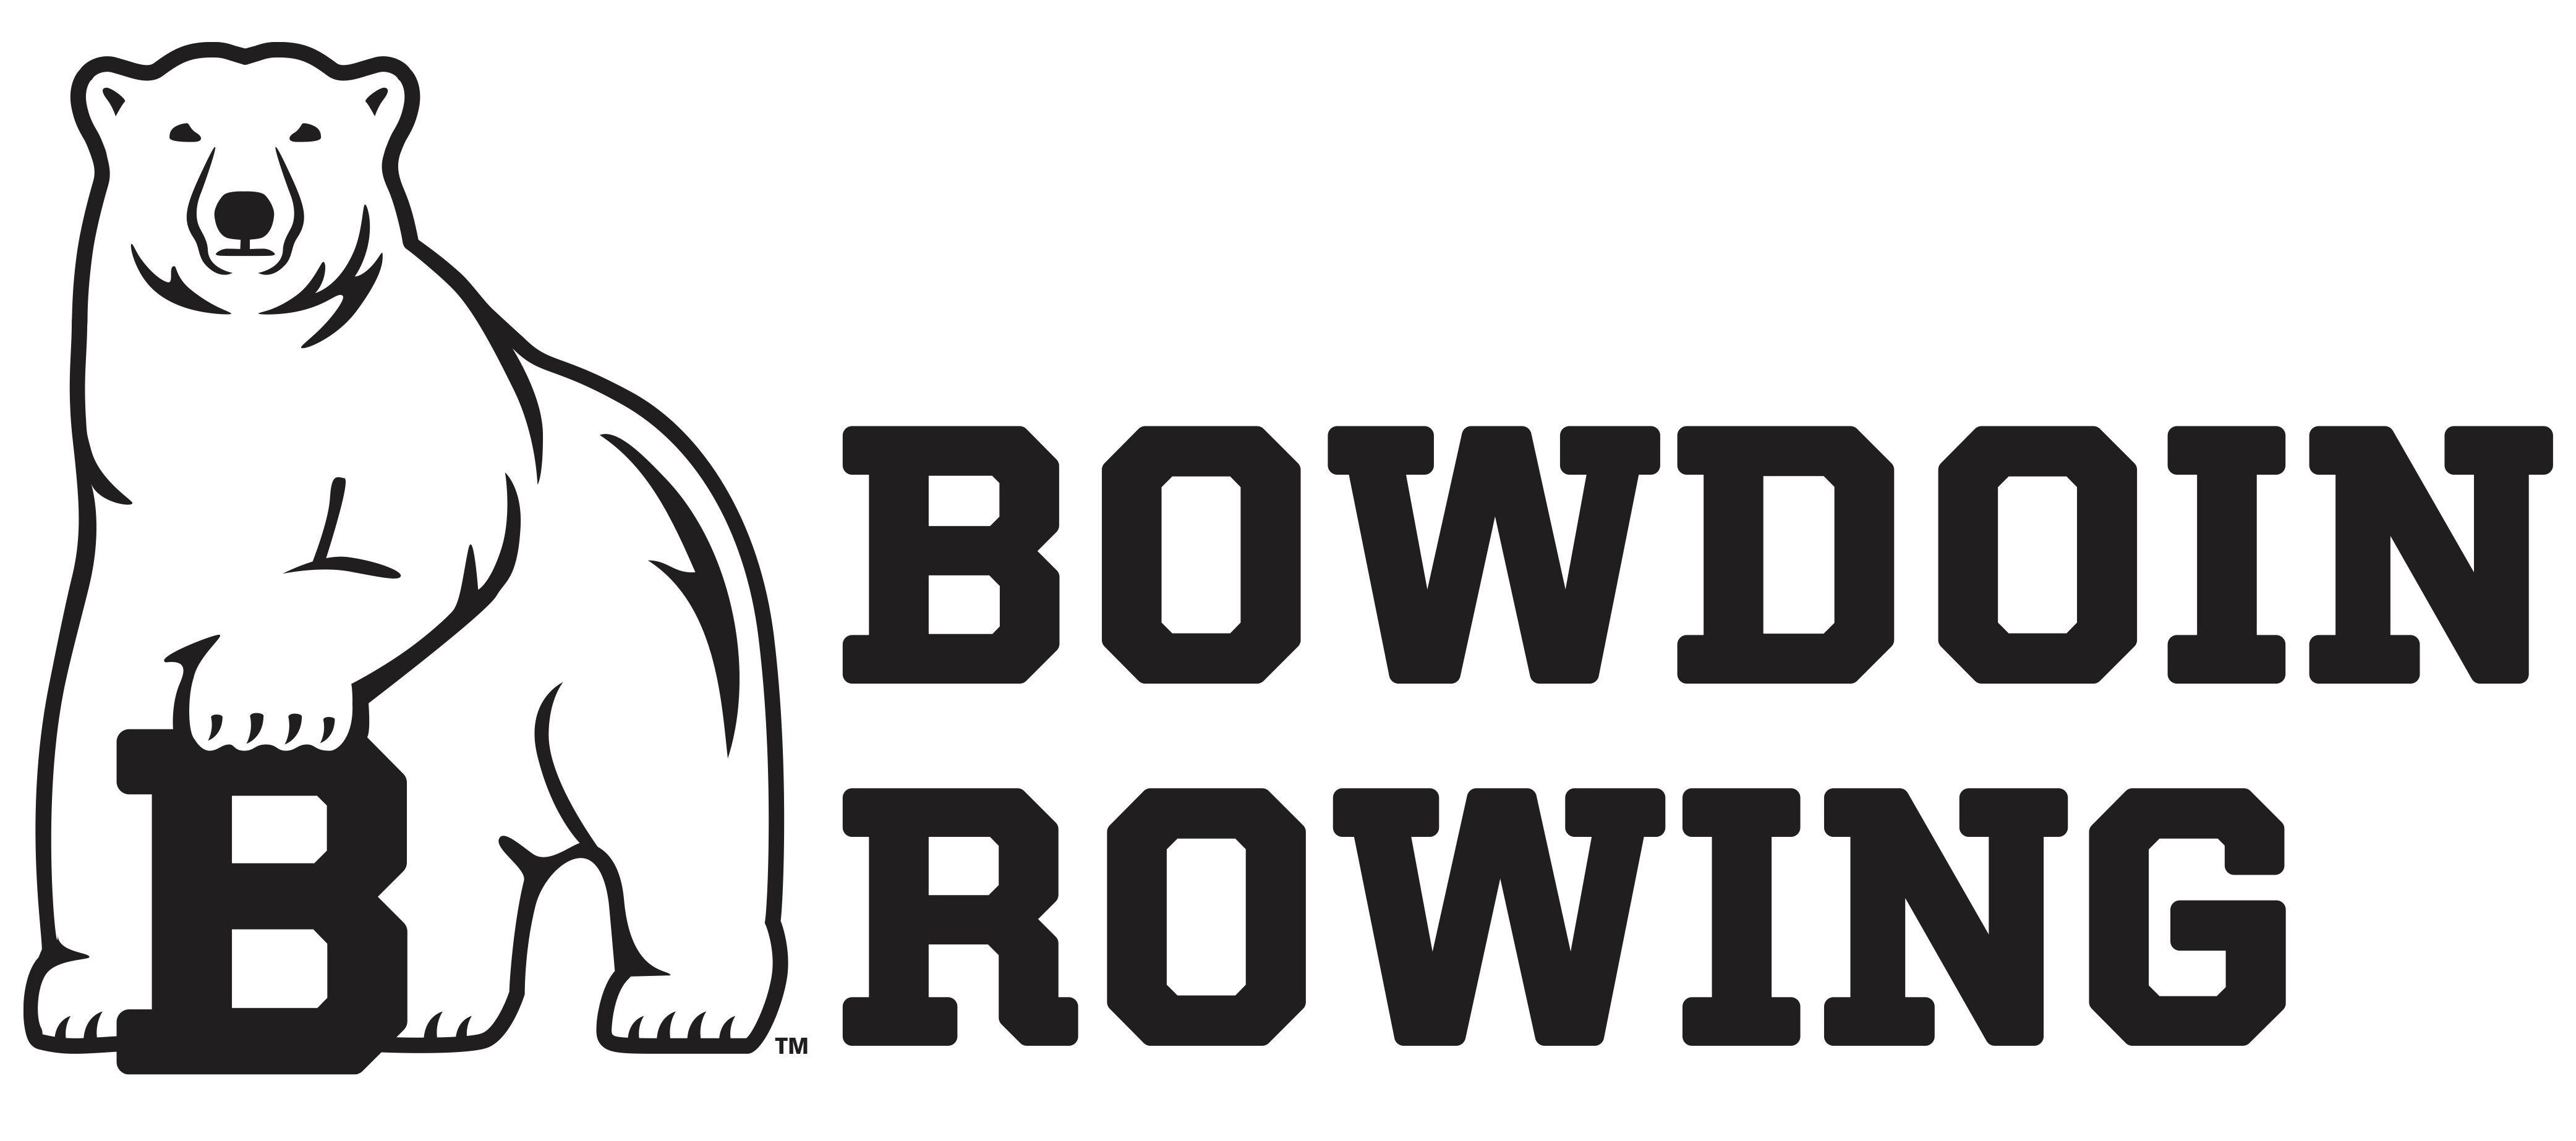 Bowdoin Logo - Facebook icon - Bowdoin Rowing